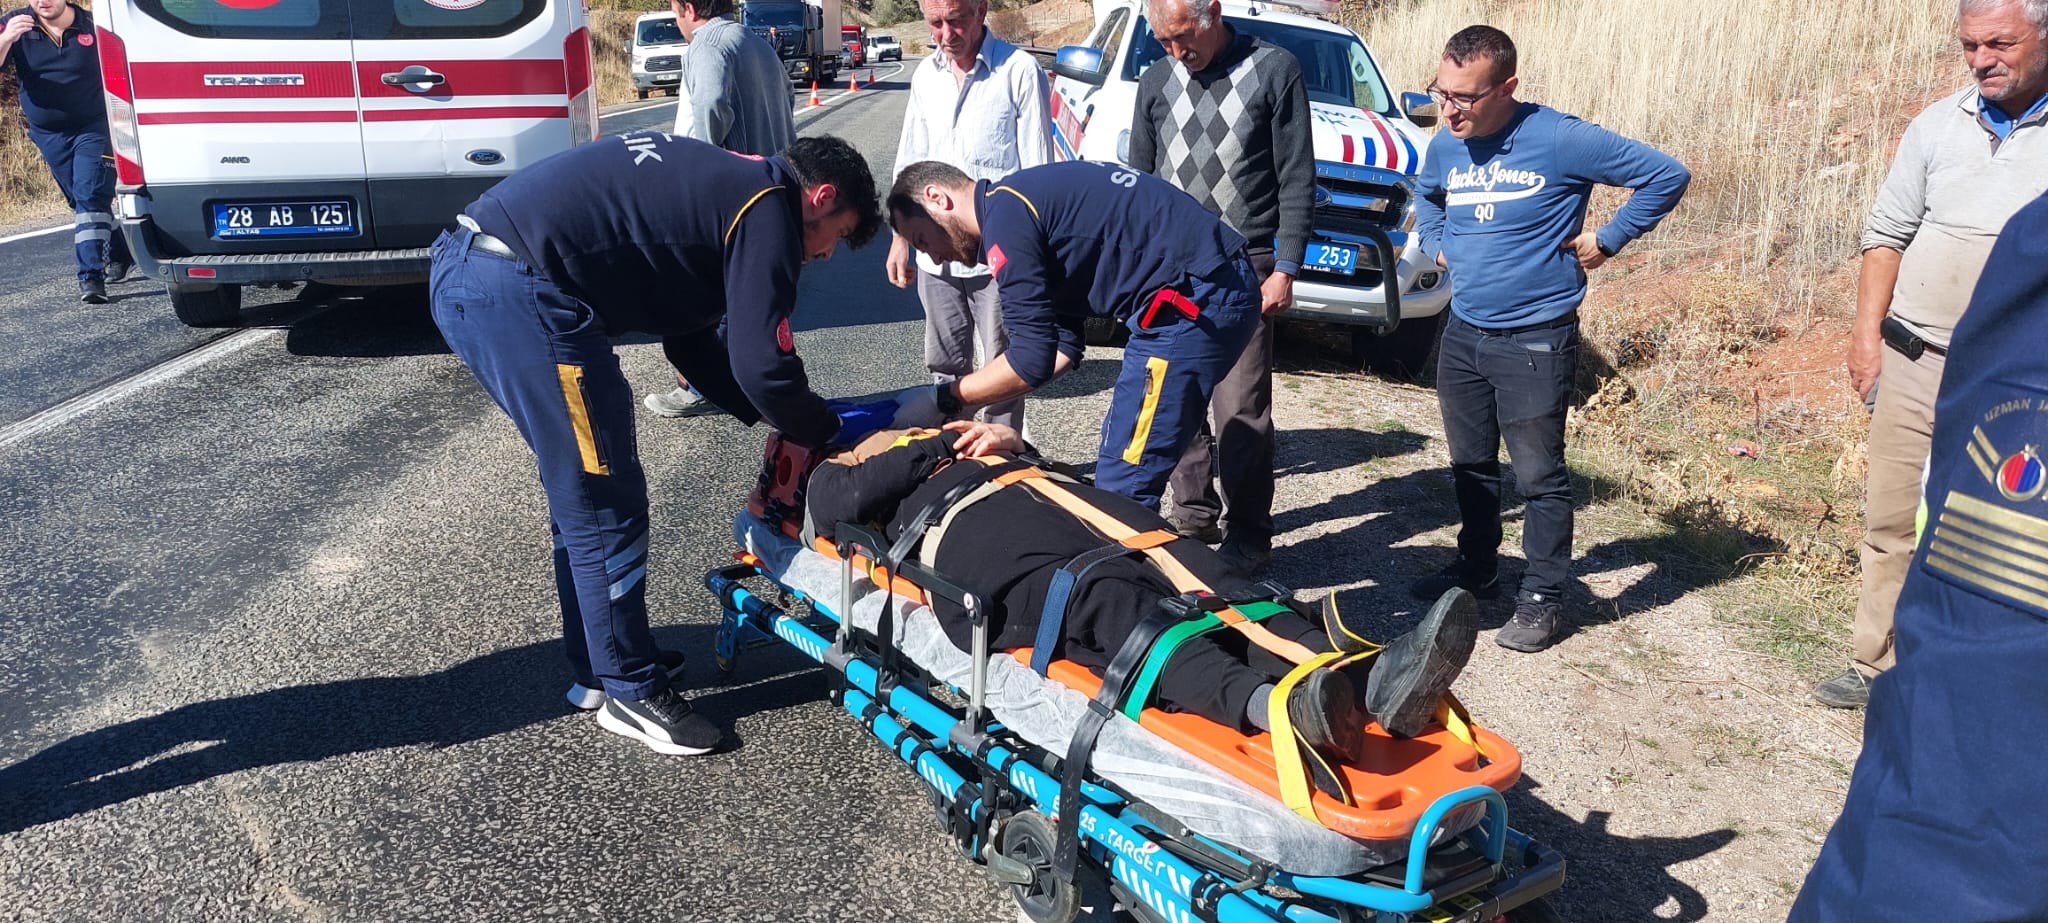 Giresun'da kaza: 5 kişi yaralanarak hastaneye kaldırıldı